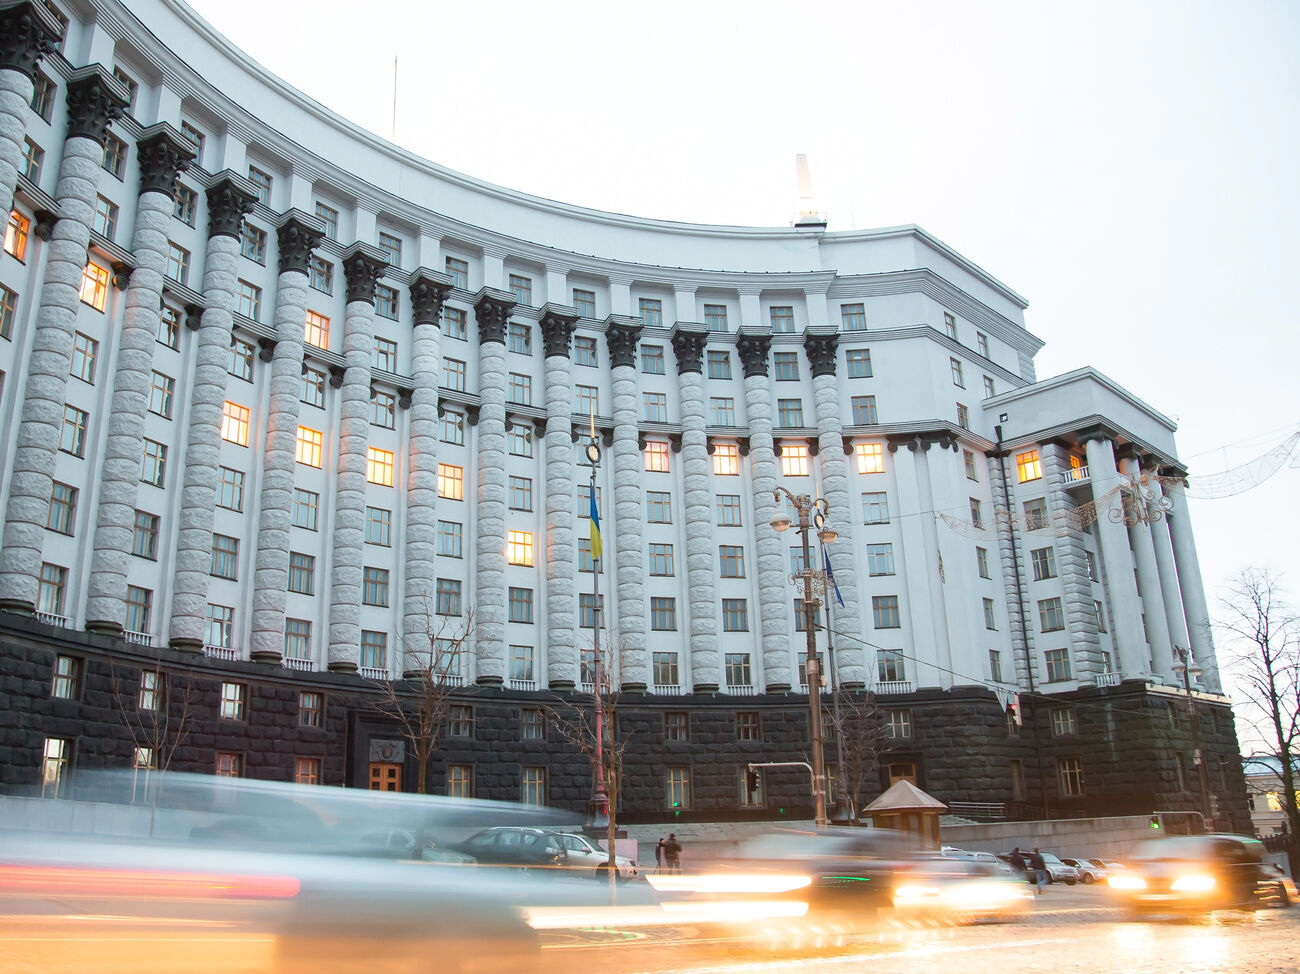 Журнал “Фокус” составил рейтинг эффективности работы украинских министров